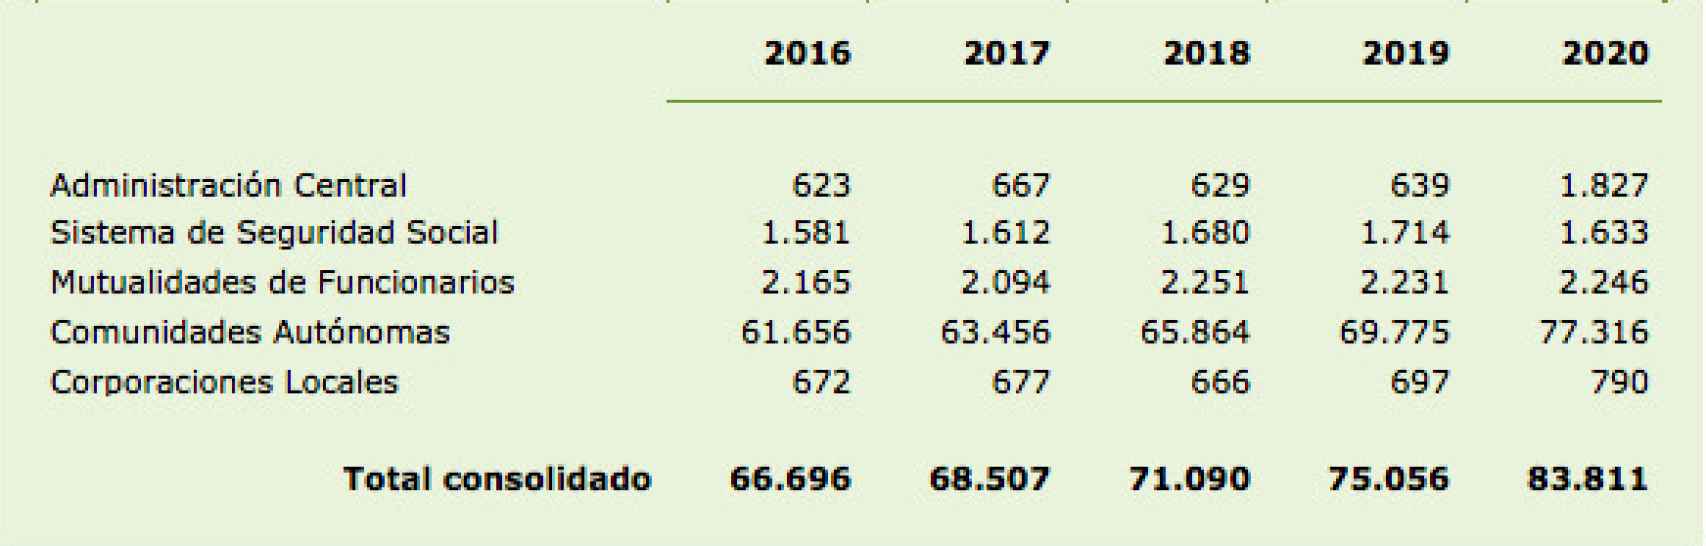 Gasto sanitario público consolidado según clasificación sectorial. En millones de euros.